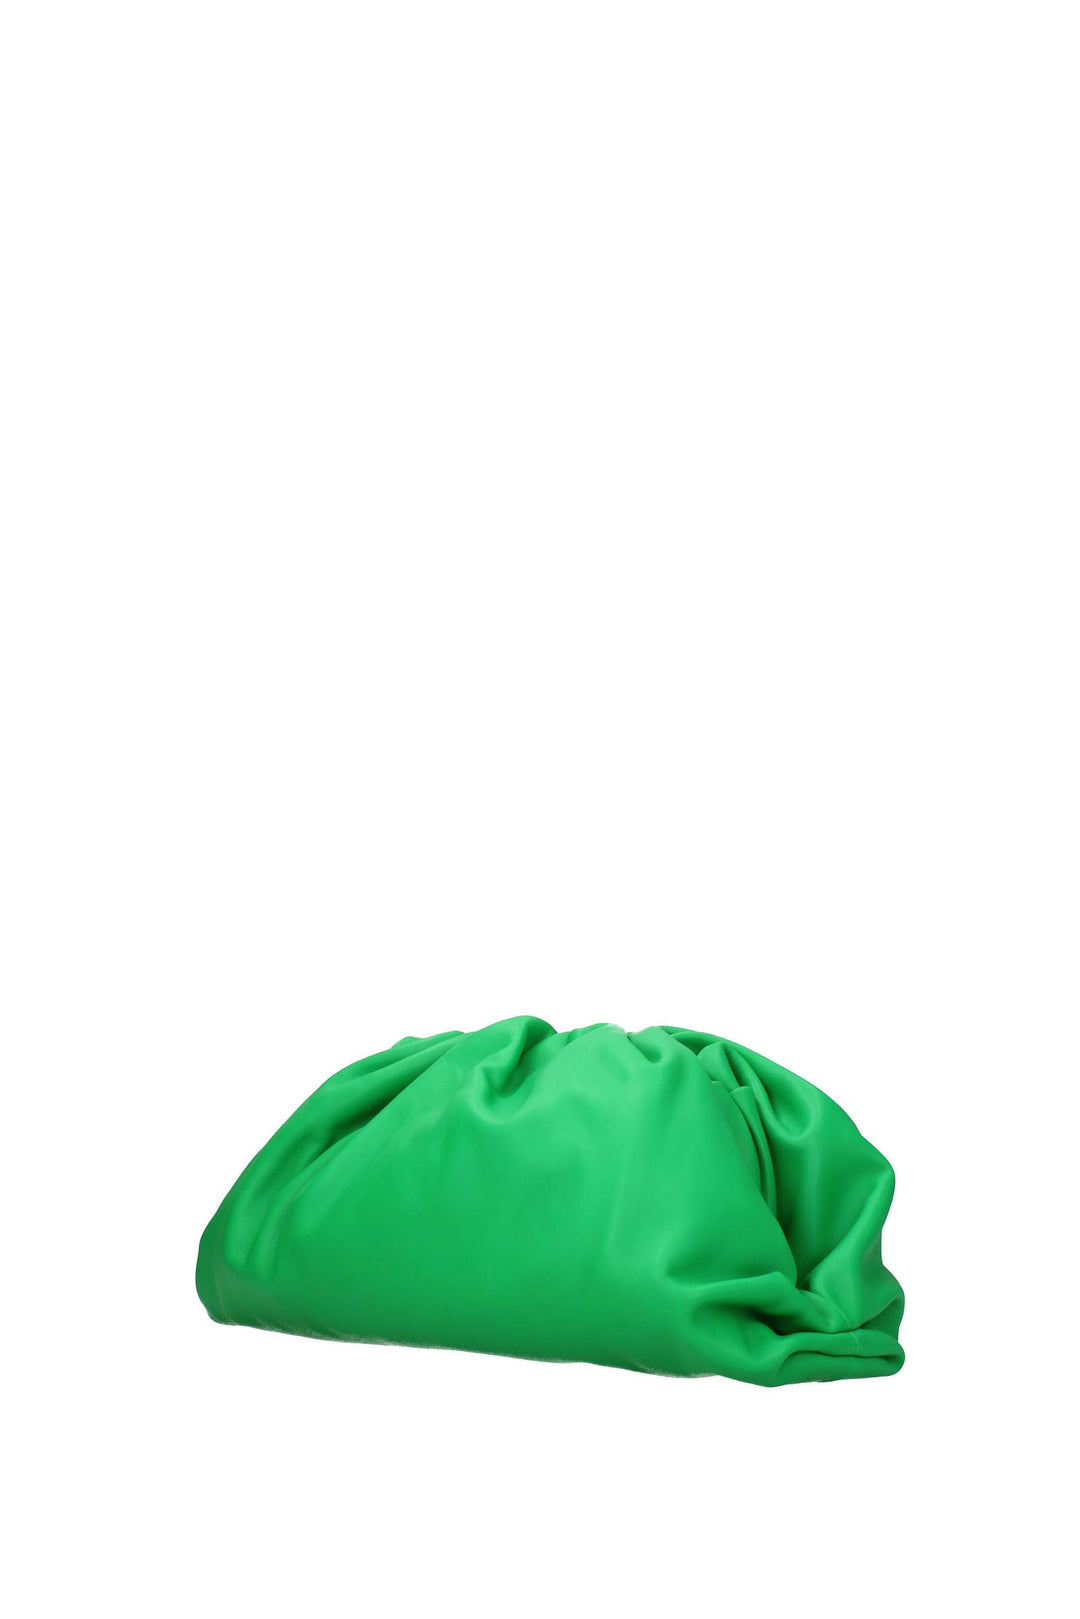 Pochette Pelle Verde Parrocchetto - Bottega Veneta - Donna